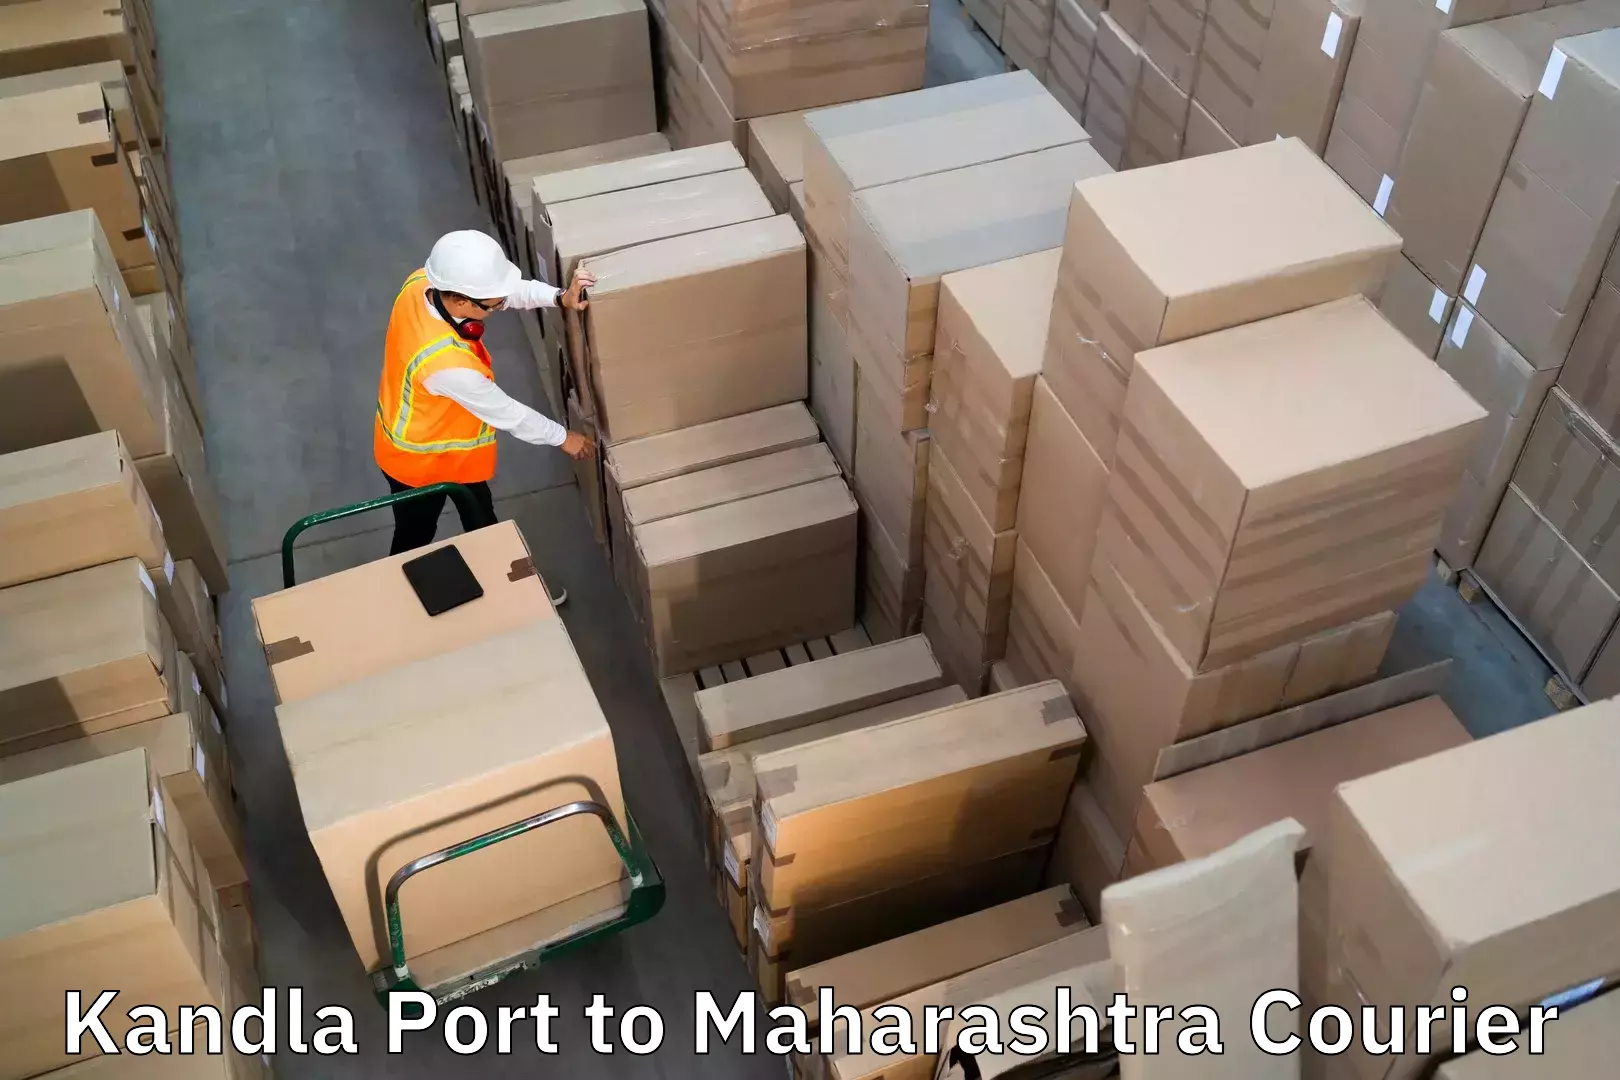 Digital baggage courier Kandla Port to Mahim